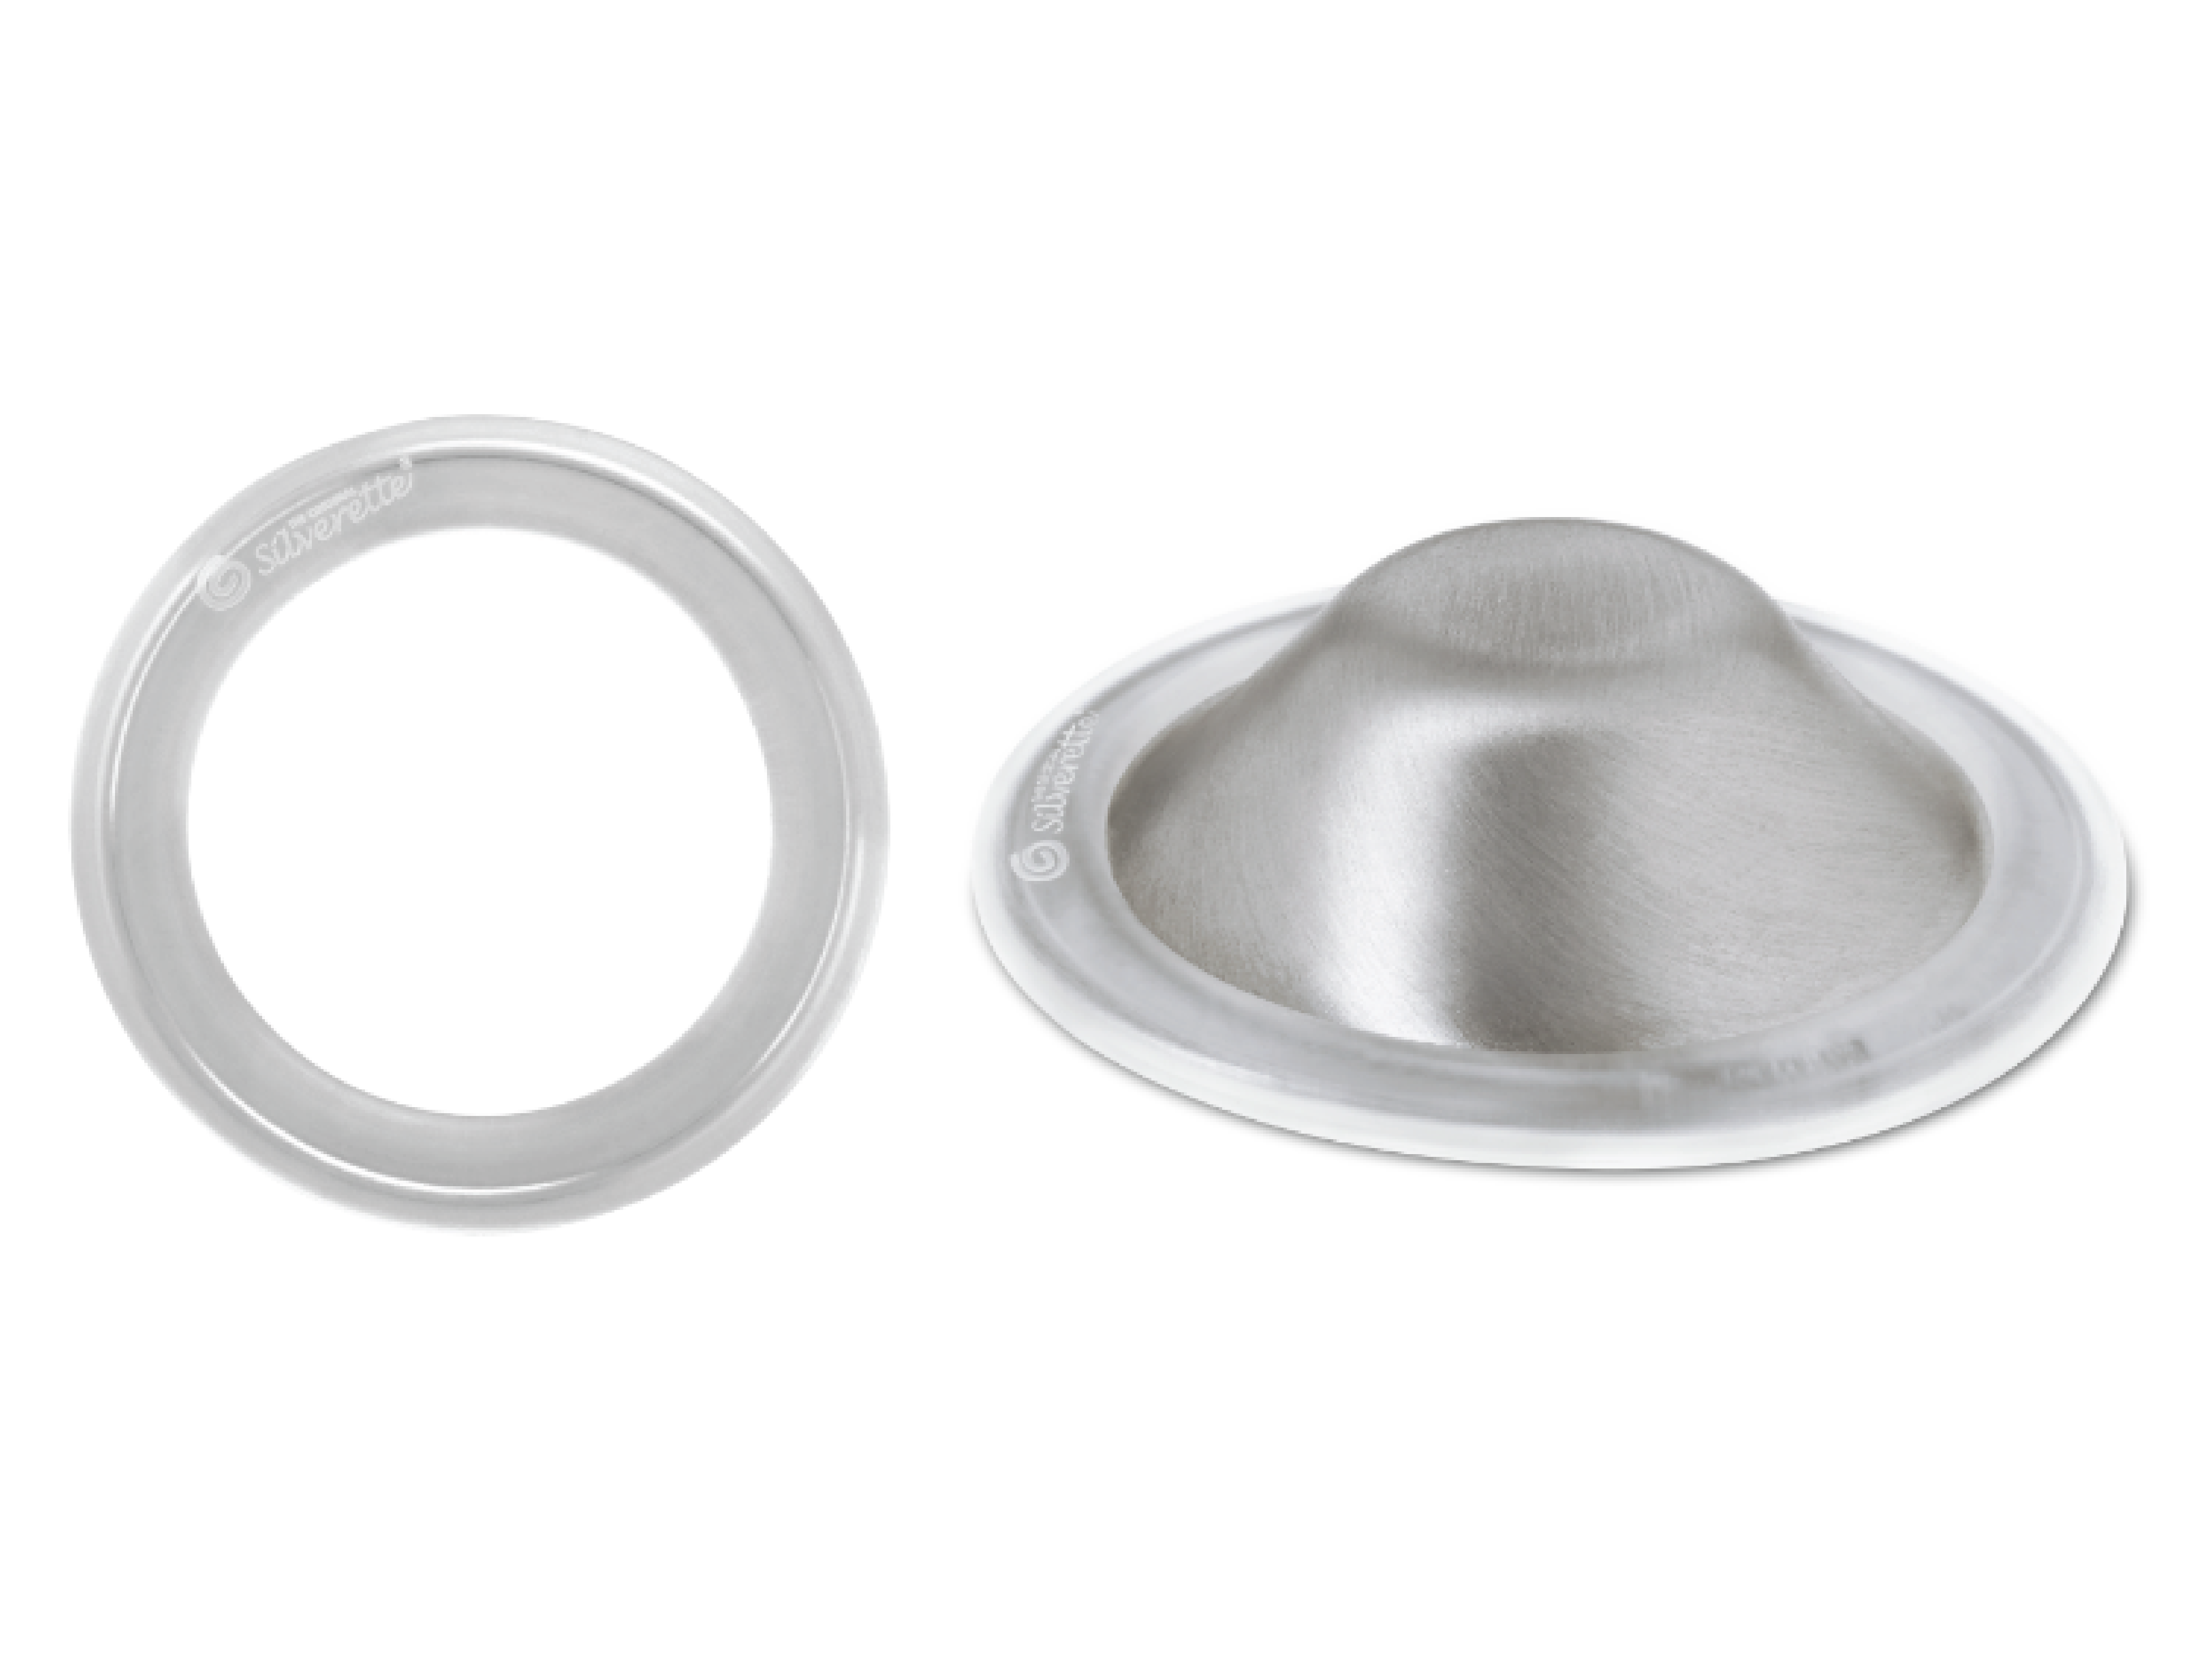 Silverette Kit med brystknoppbeskyttere og silikonring, XL, 1 sett